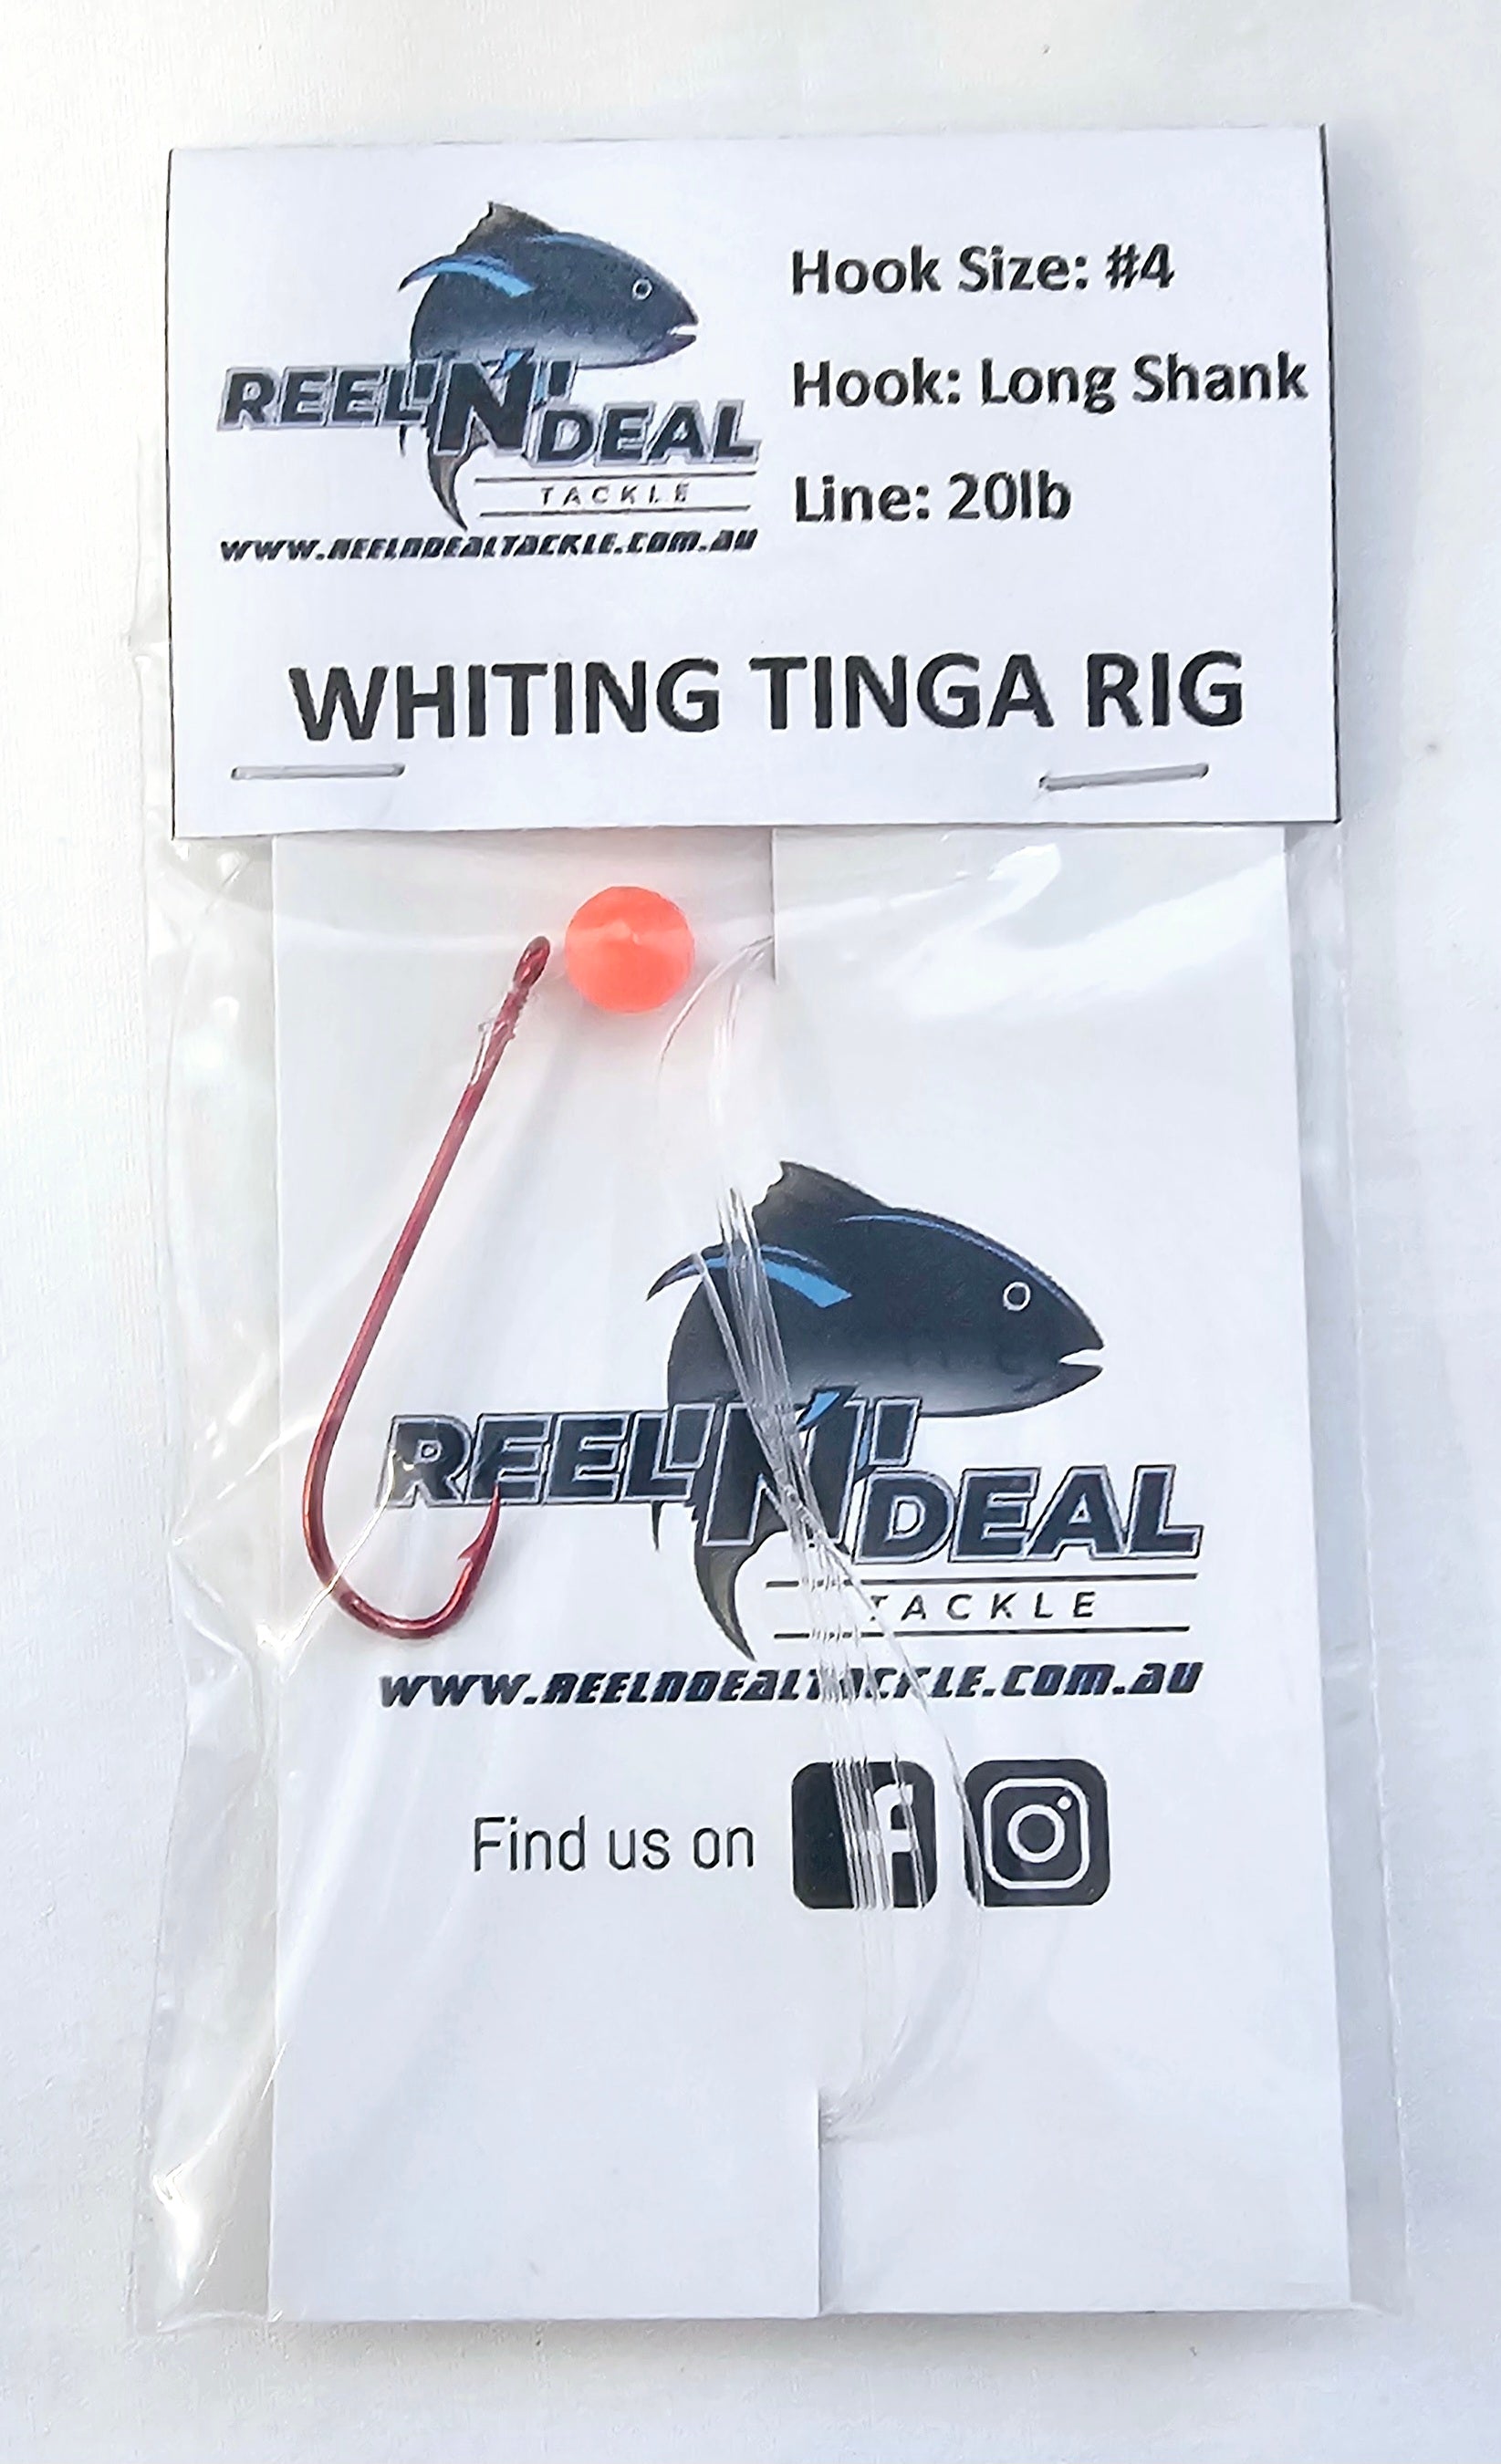 Whiting Tinga Rig Long Shank – REEL 'N' DEAL TACKLE